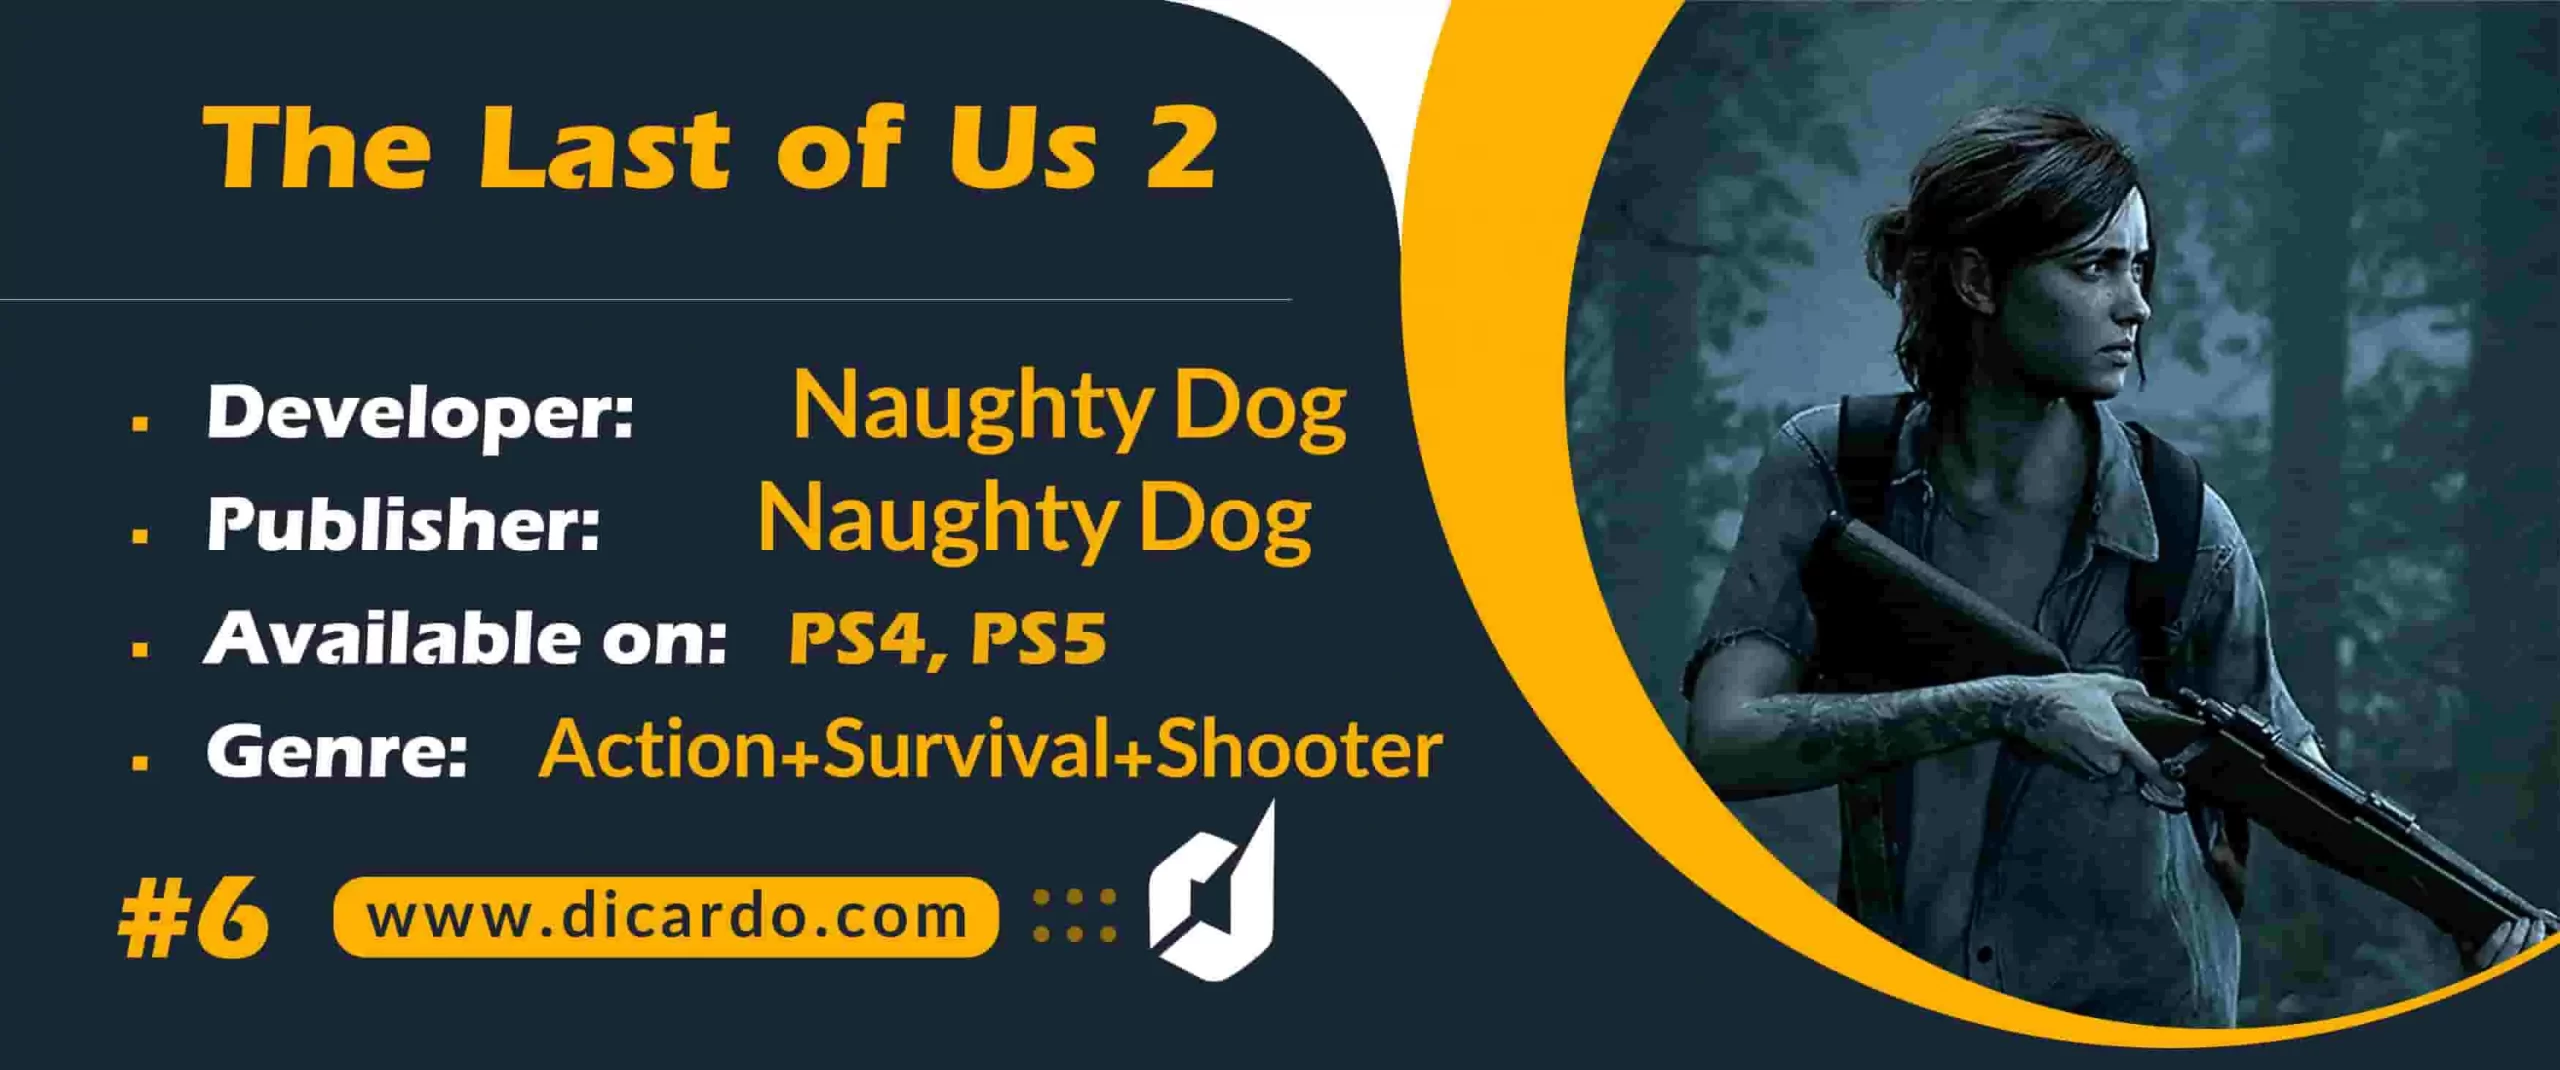 #6 د لست آو آس تو The Last of Us 2 از بهترین بازیهای اکشن ماجراجویی